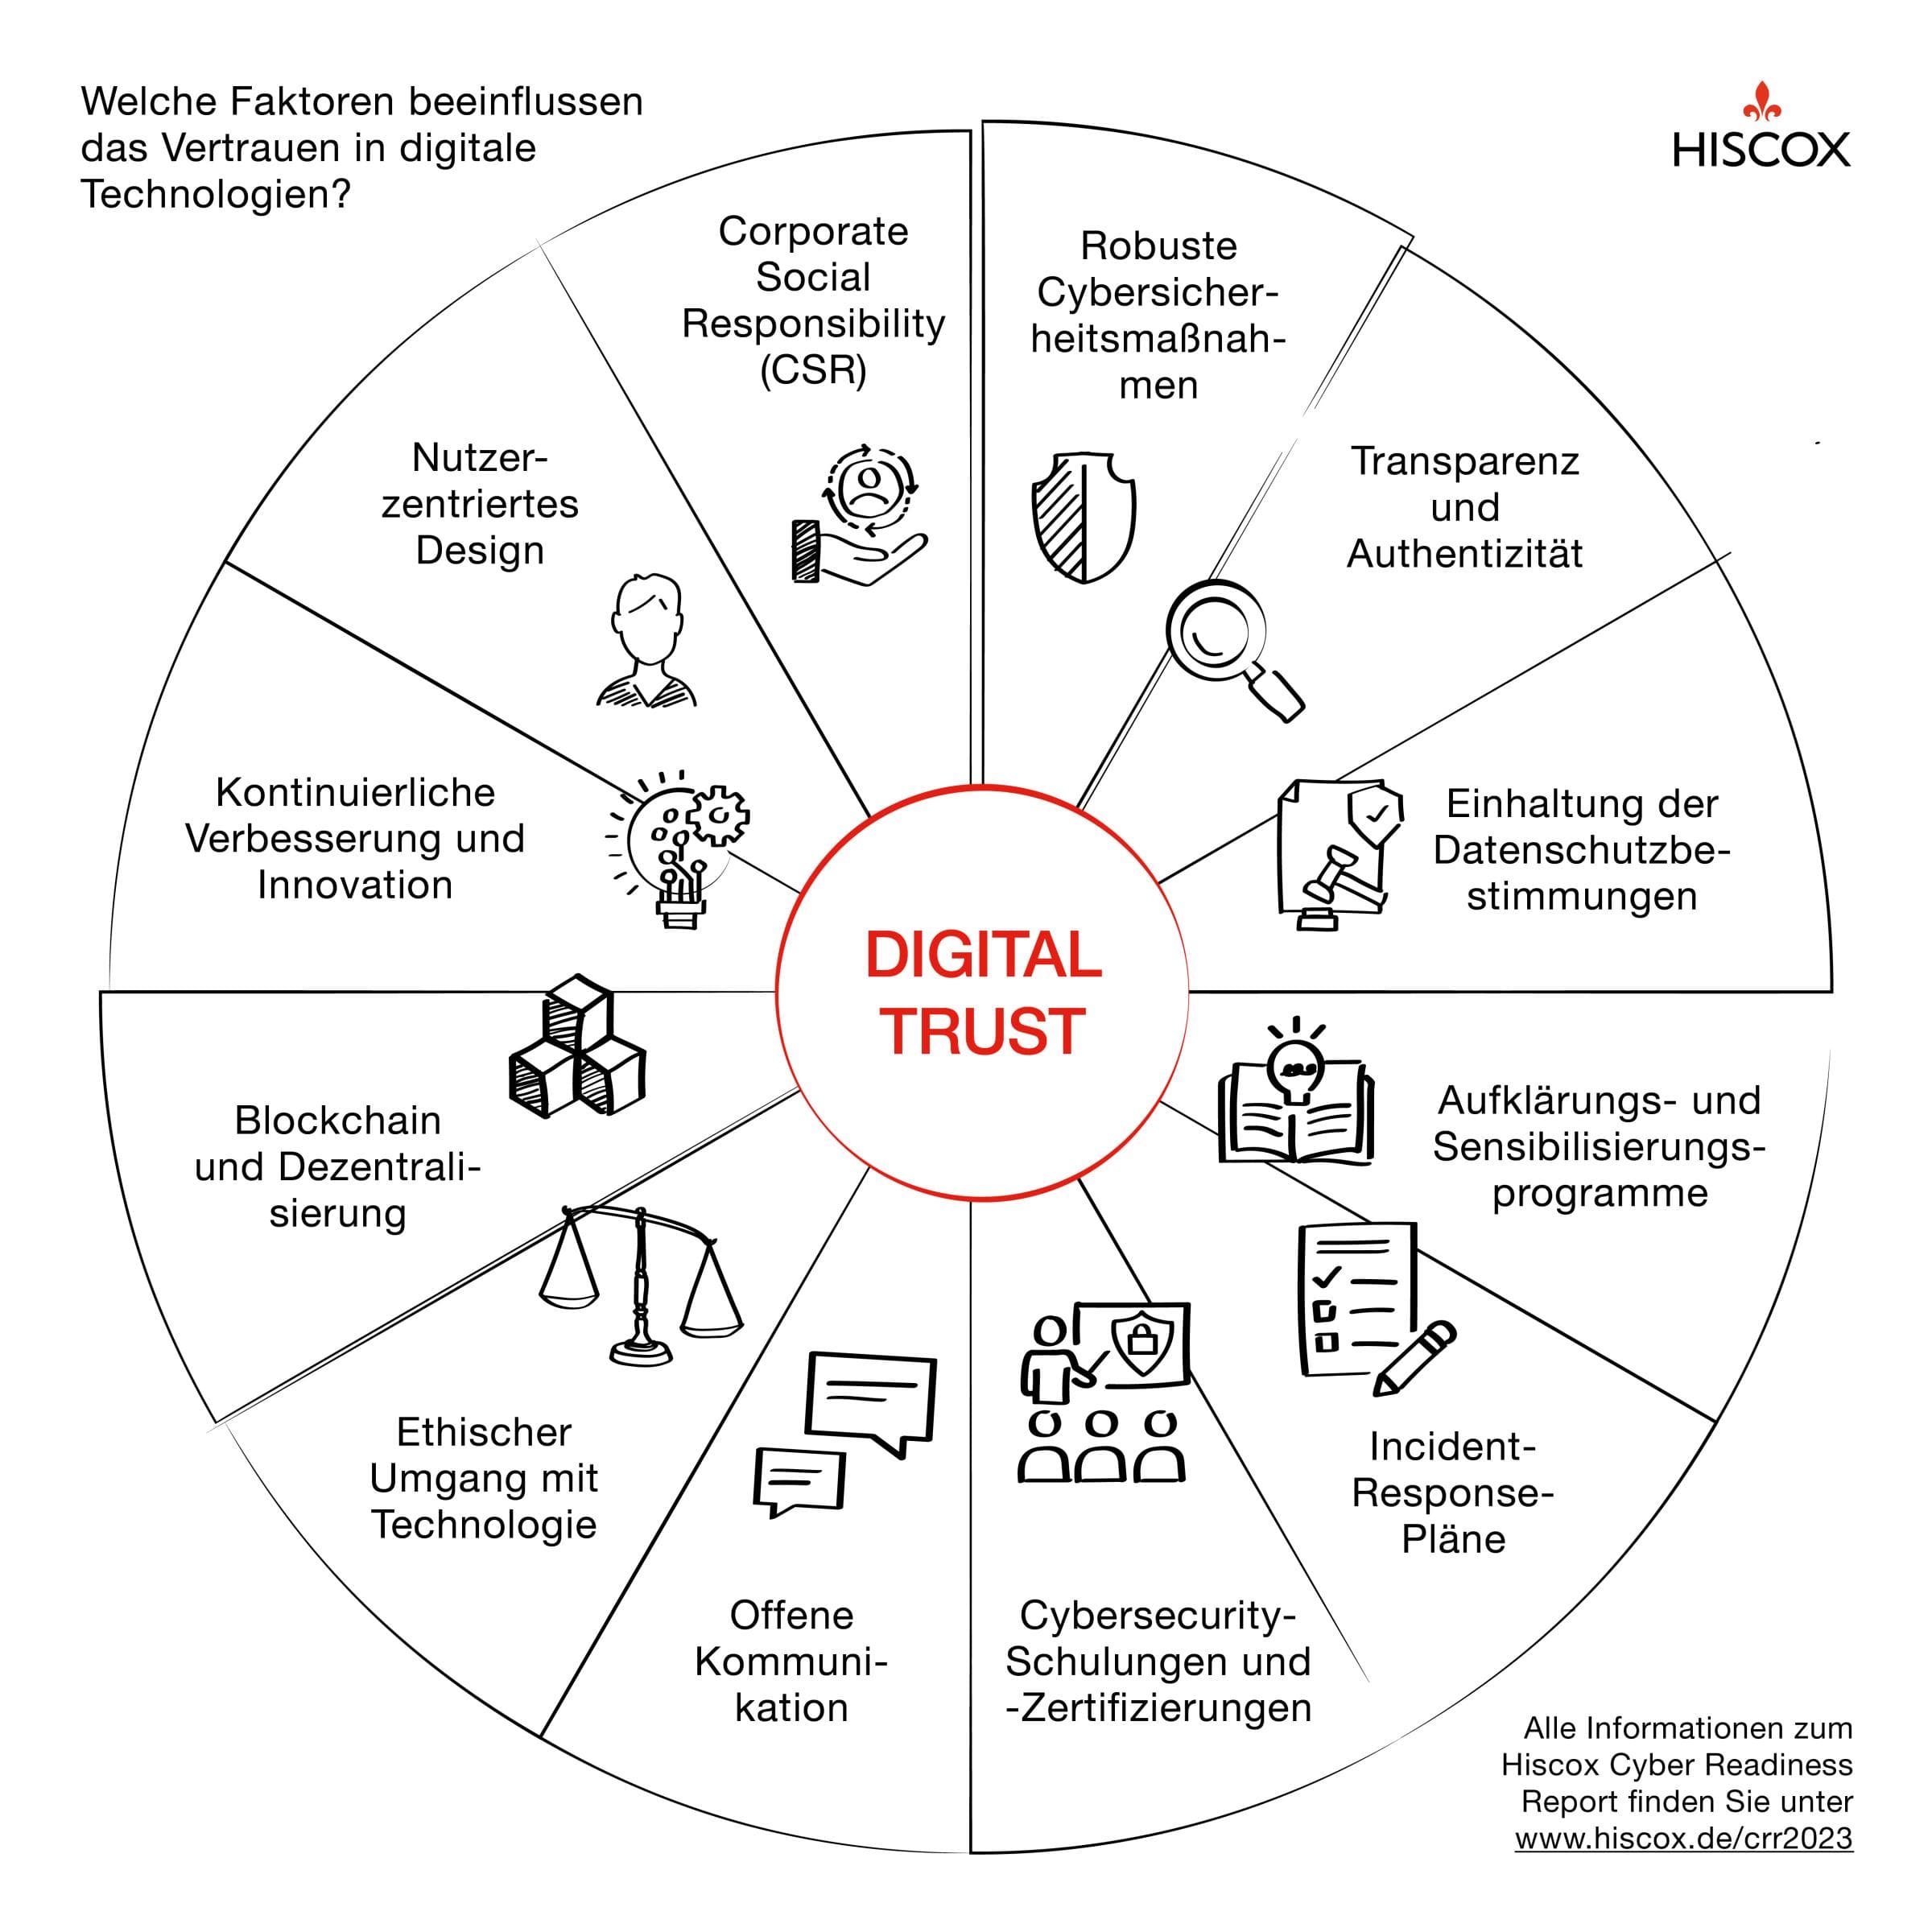 Infografik mit Übersicht der Faktoren, die das Vertrauen in digitale Technologien beeinflussen. Darunter: Transparenz, Design, Datenschutzbestimmung, Schulungen, Kommunikation und CSR